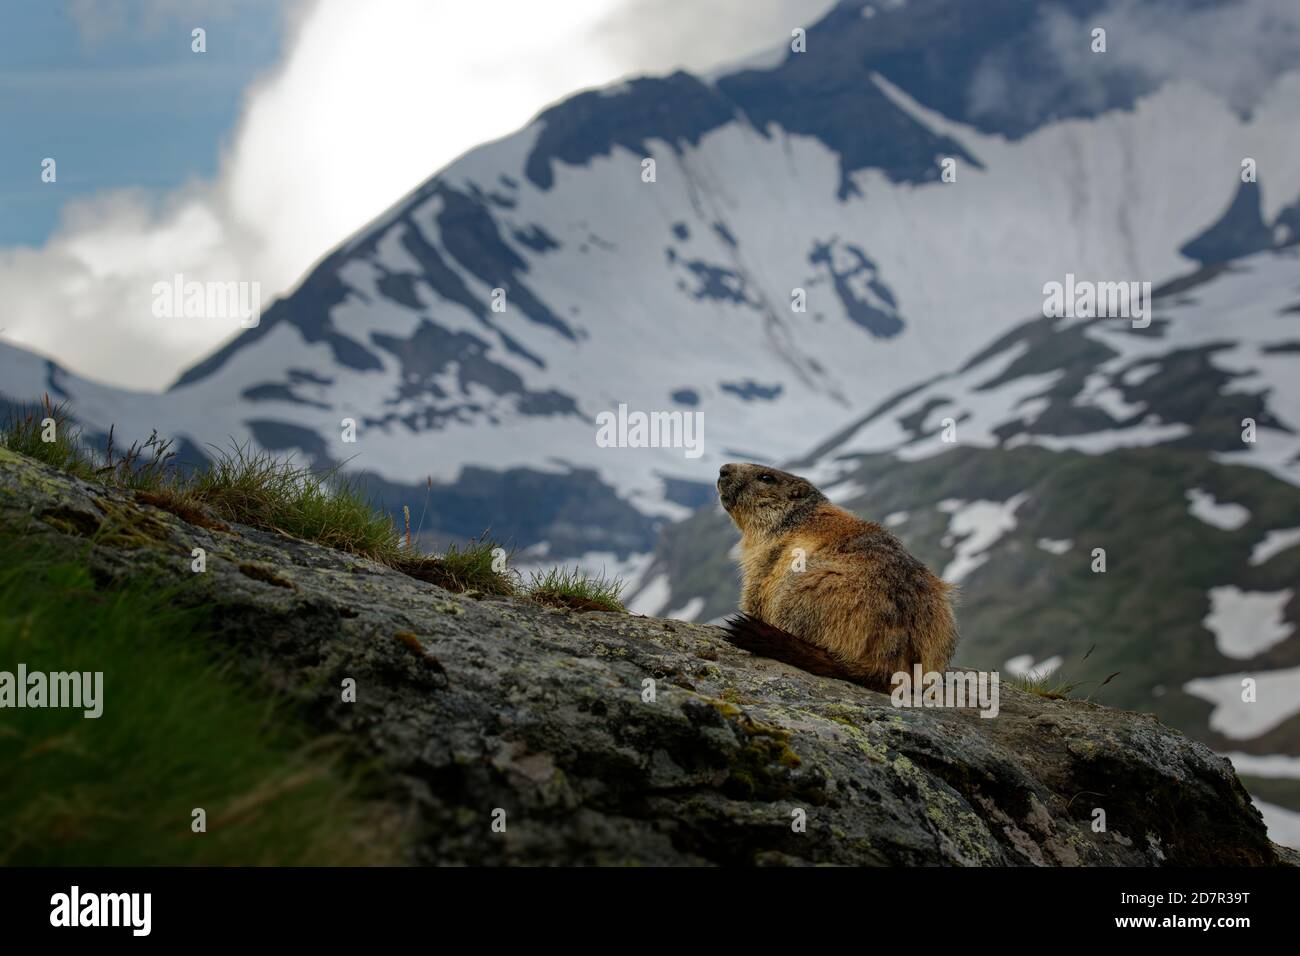 Das Alpenmurmeltier (Marmota marmota) auf der Almwiese, großes bodenbewohntes Eichhörnchen, aus der Gattung der Murmeltiere. Stockfoto